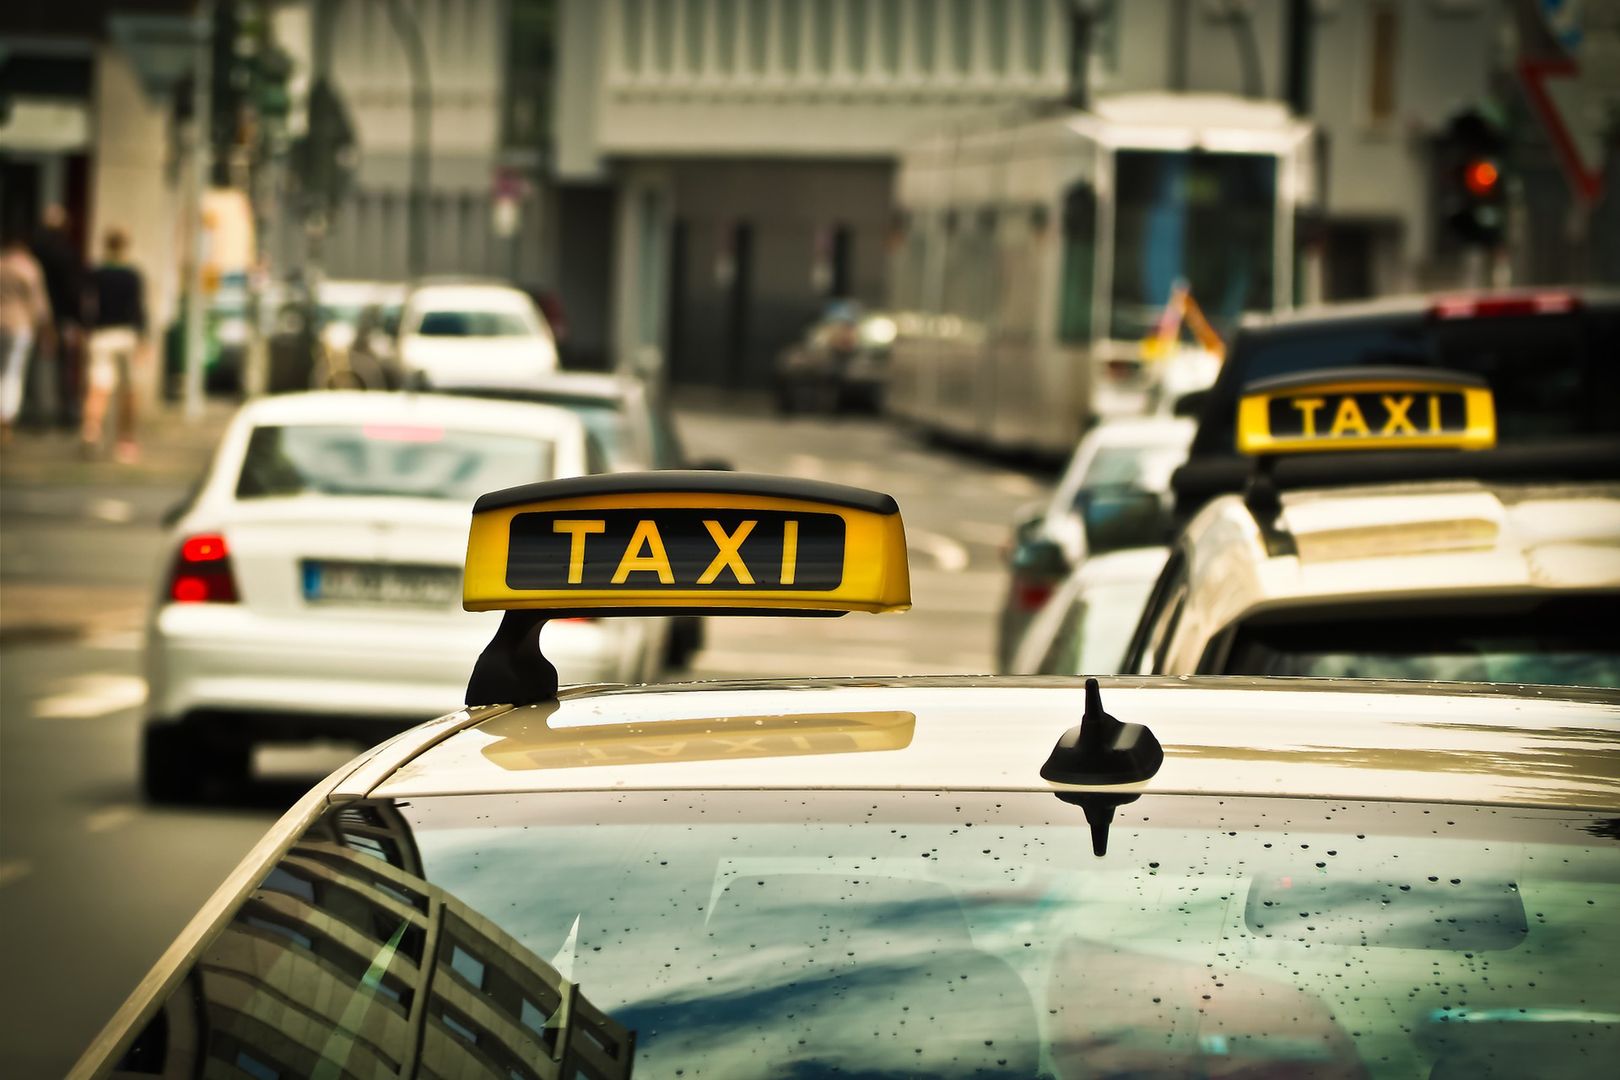 Sprawdź, gdzie najtaniej pojedziesz taksówką